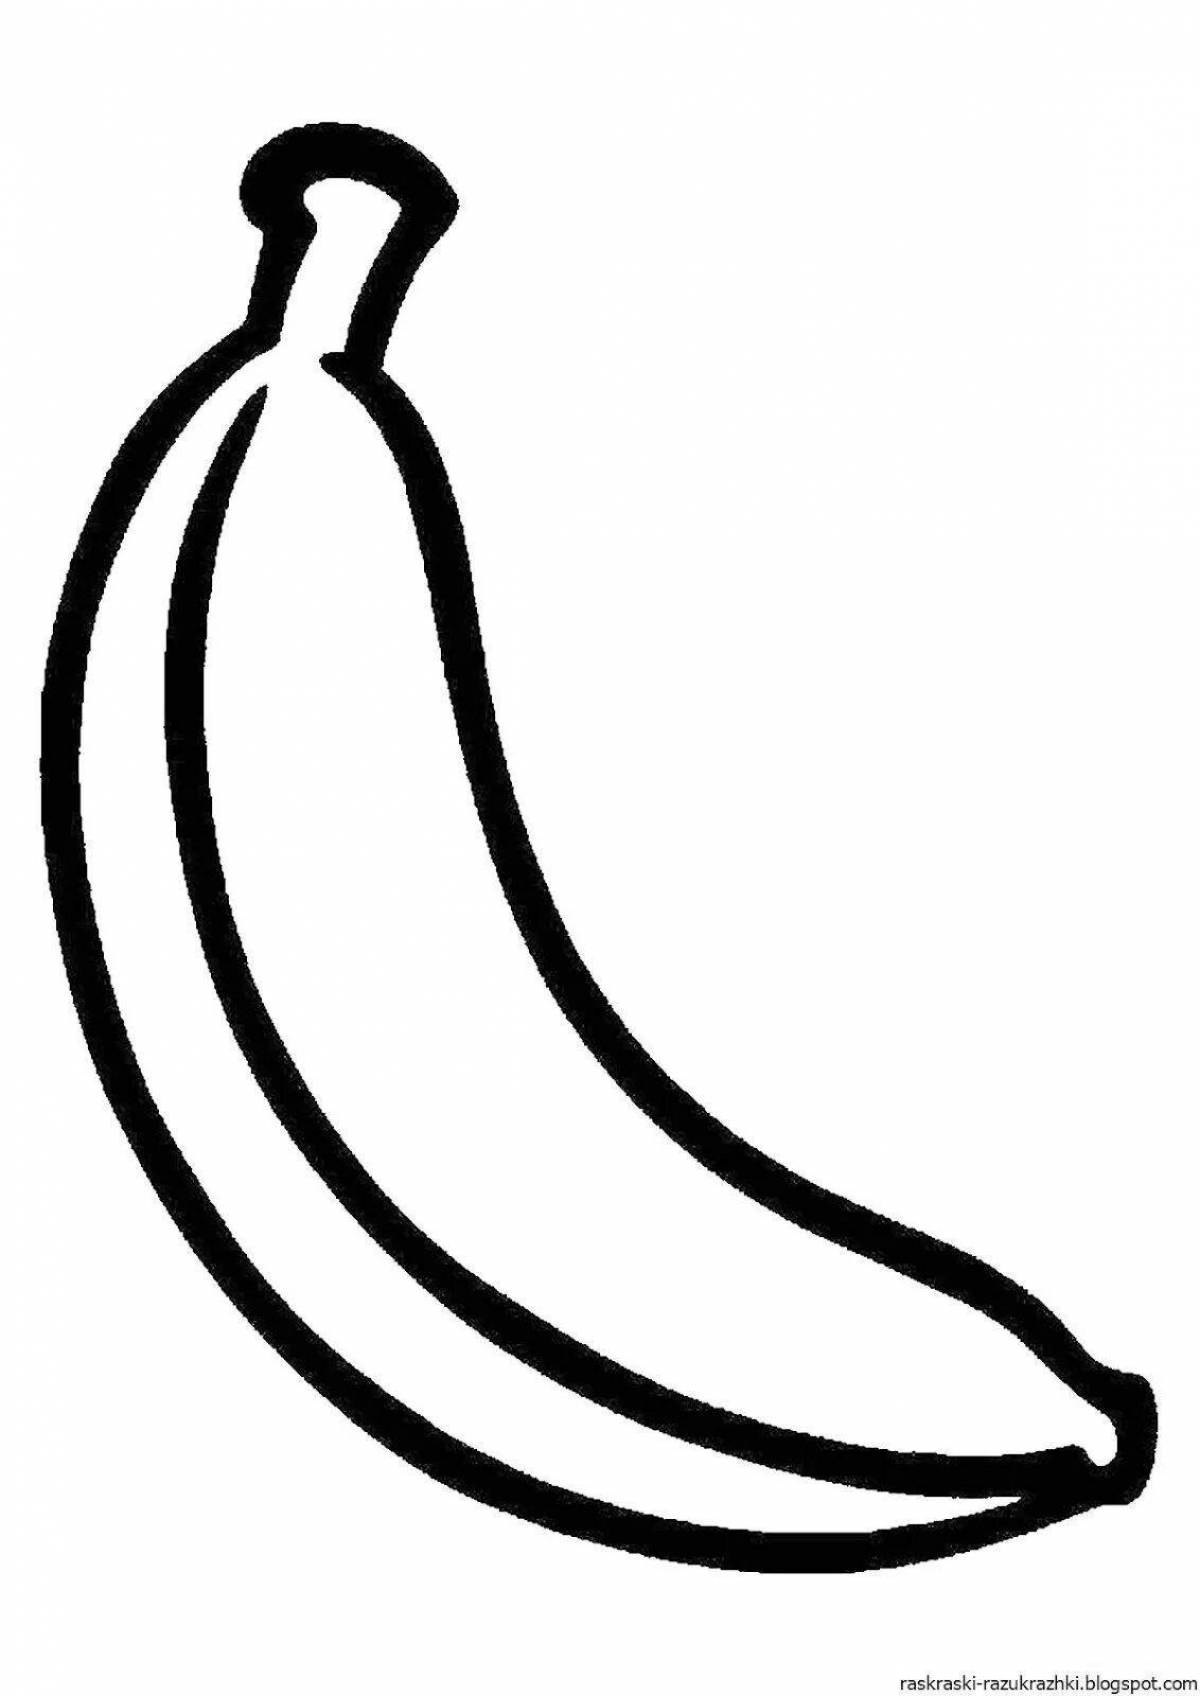 Развлекательная раскраска бананов для детей 5-6 лет